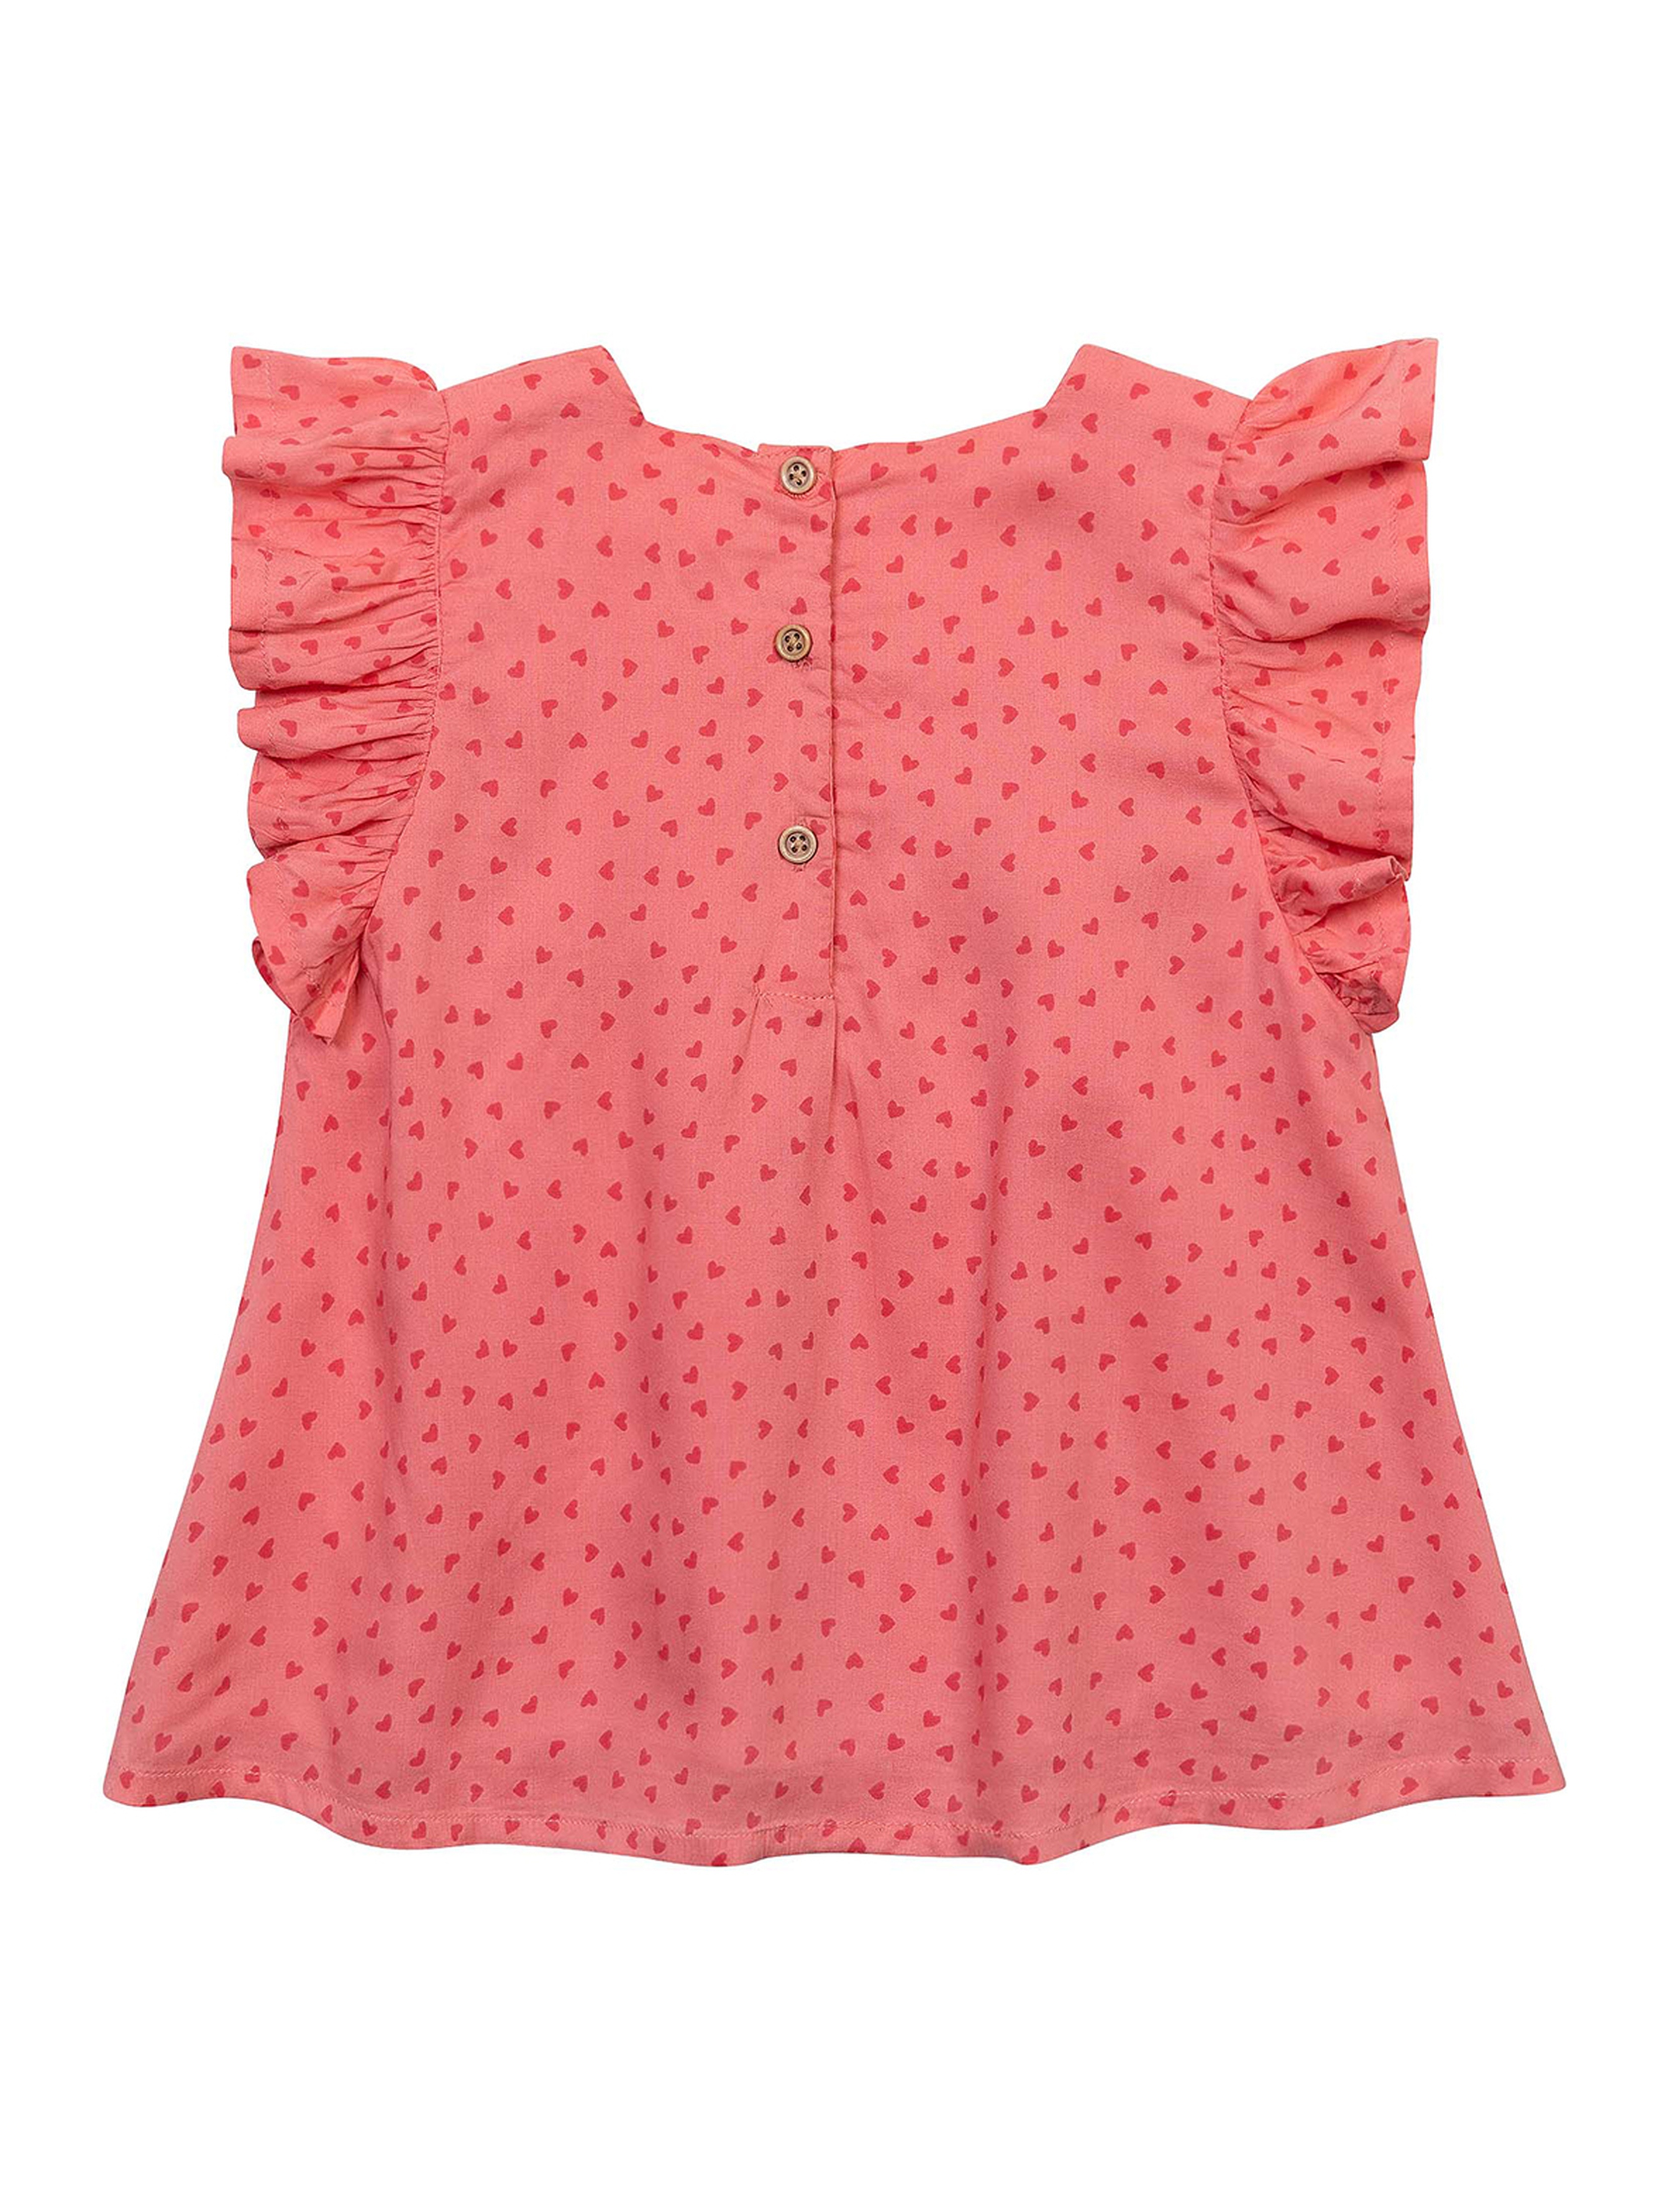 Różowa bluzka z falbankami dla niemowlaka w serduszka